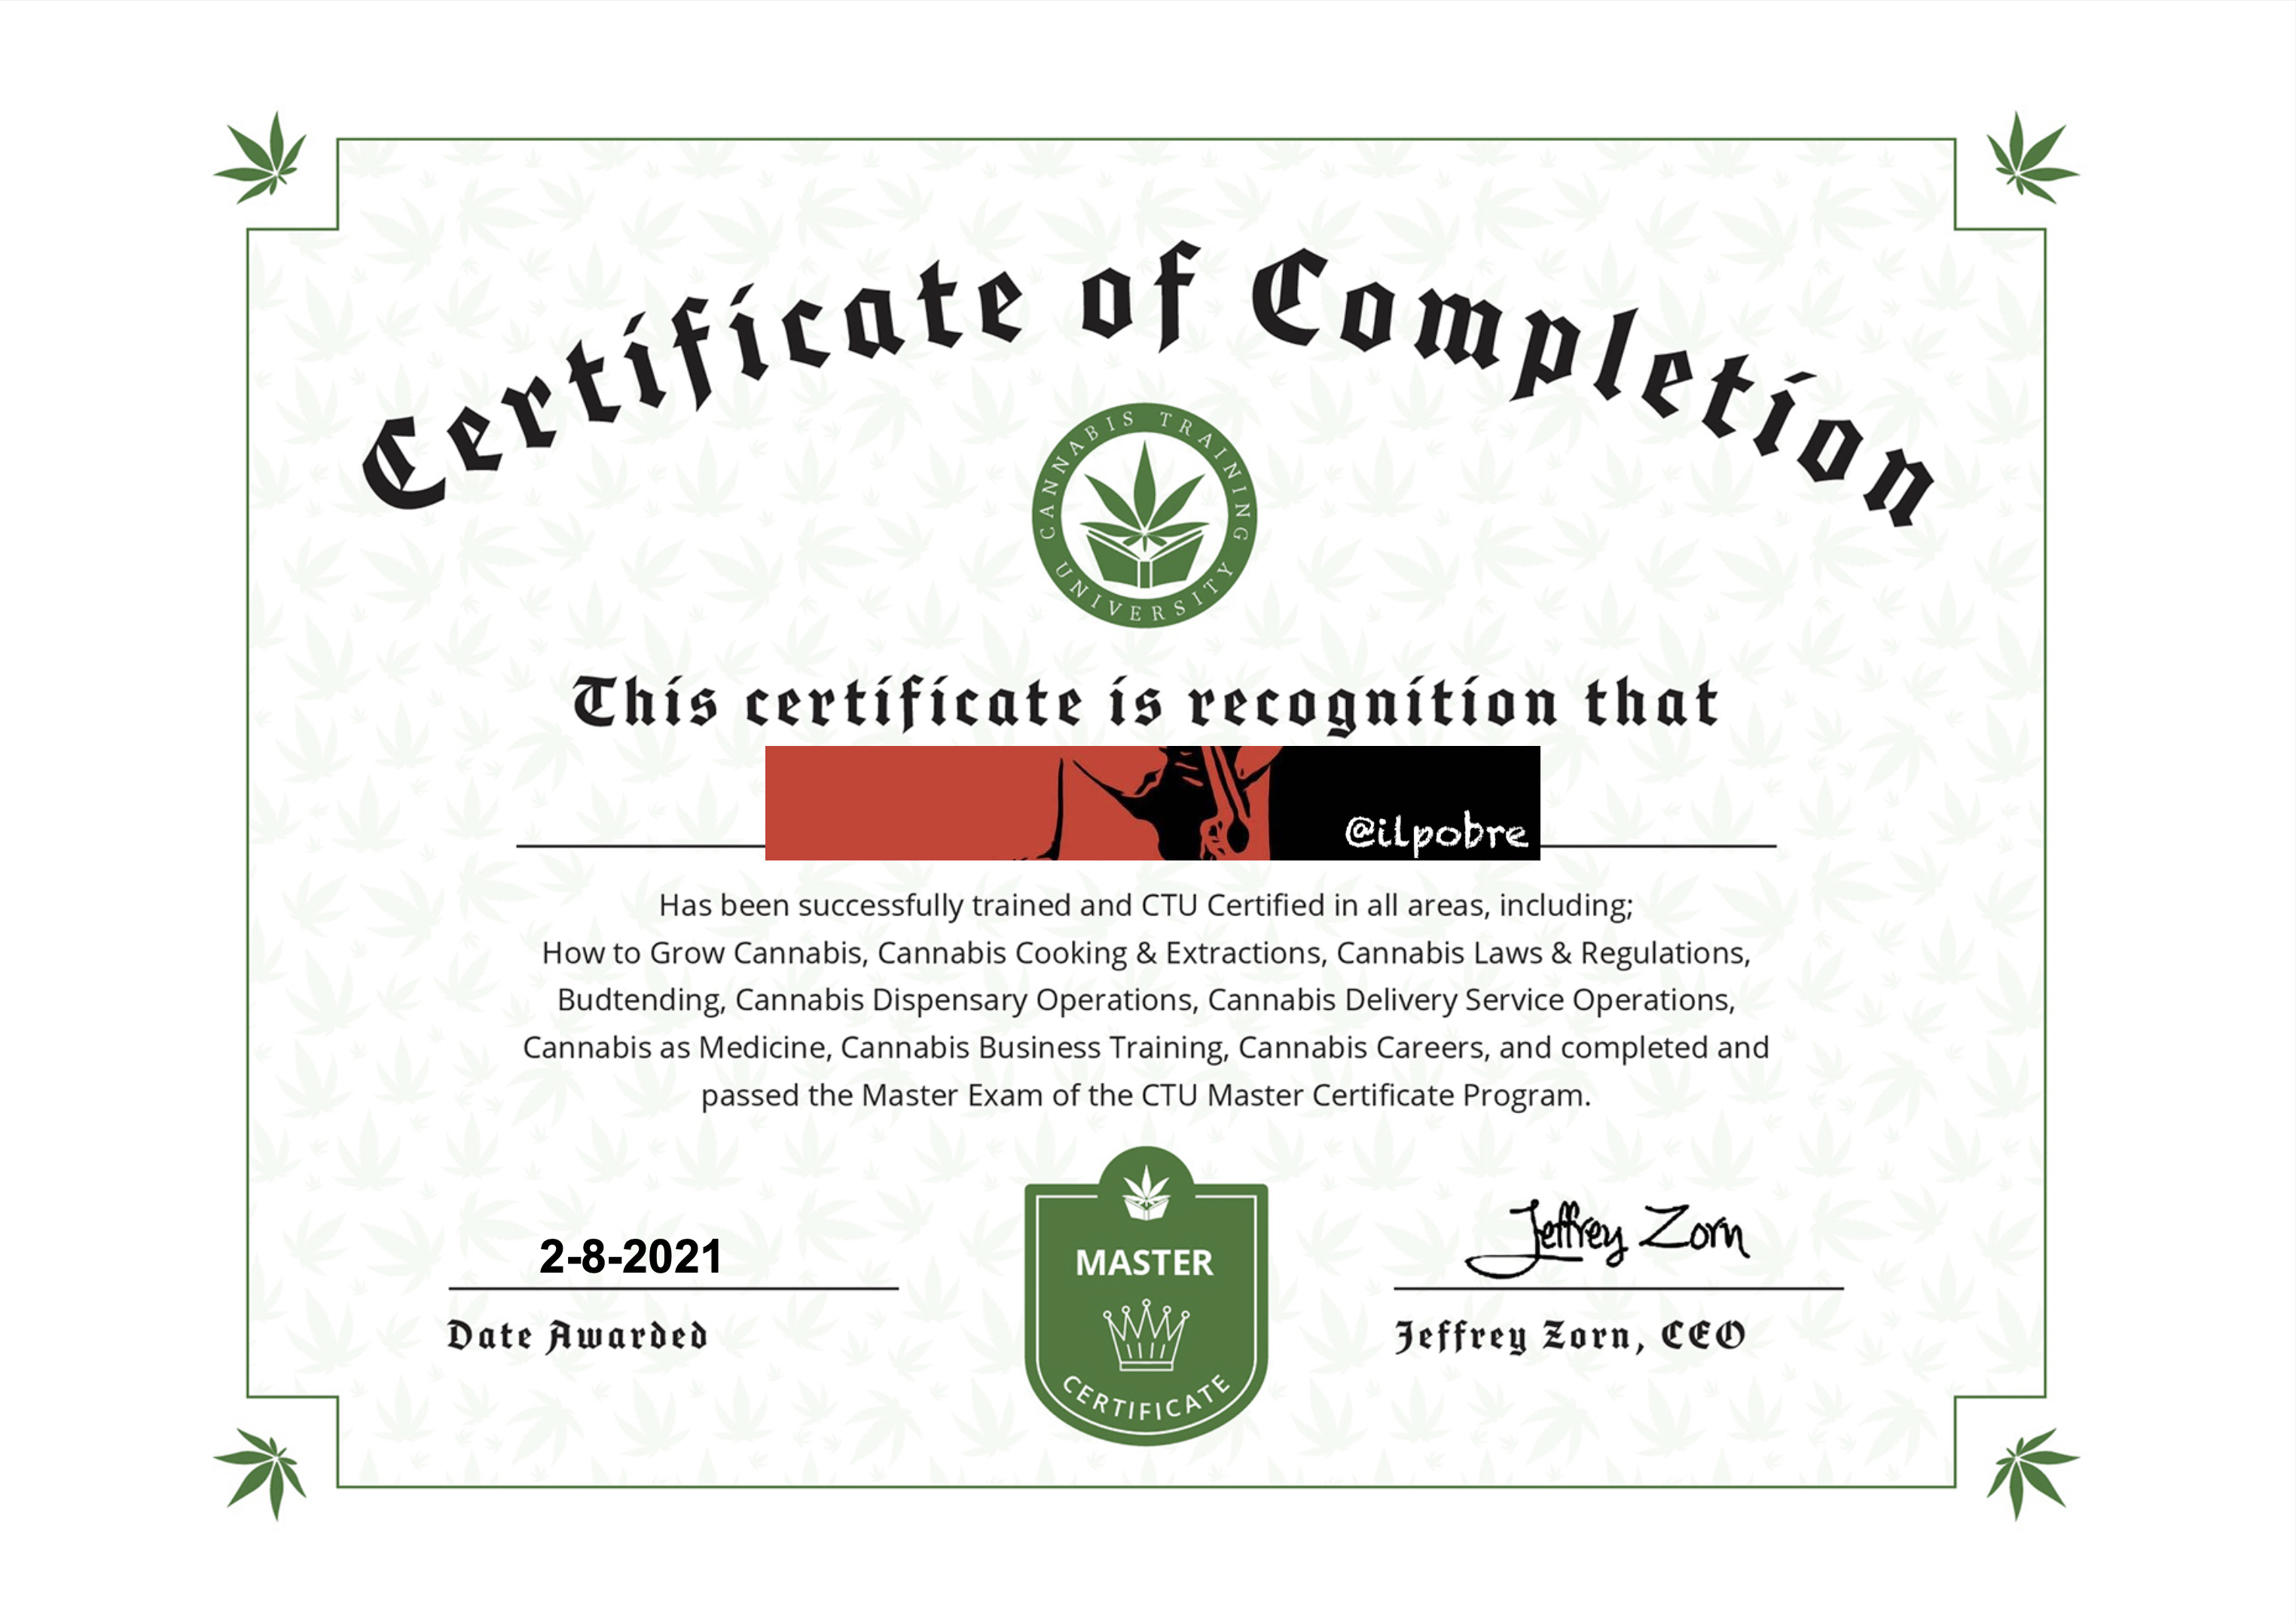 CTU Master Certificate img copia.png